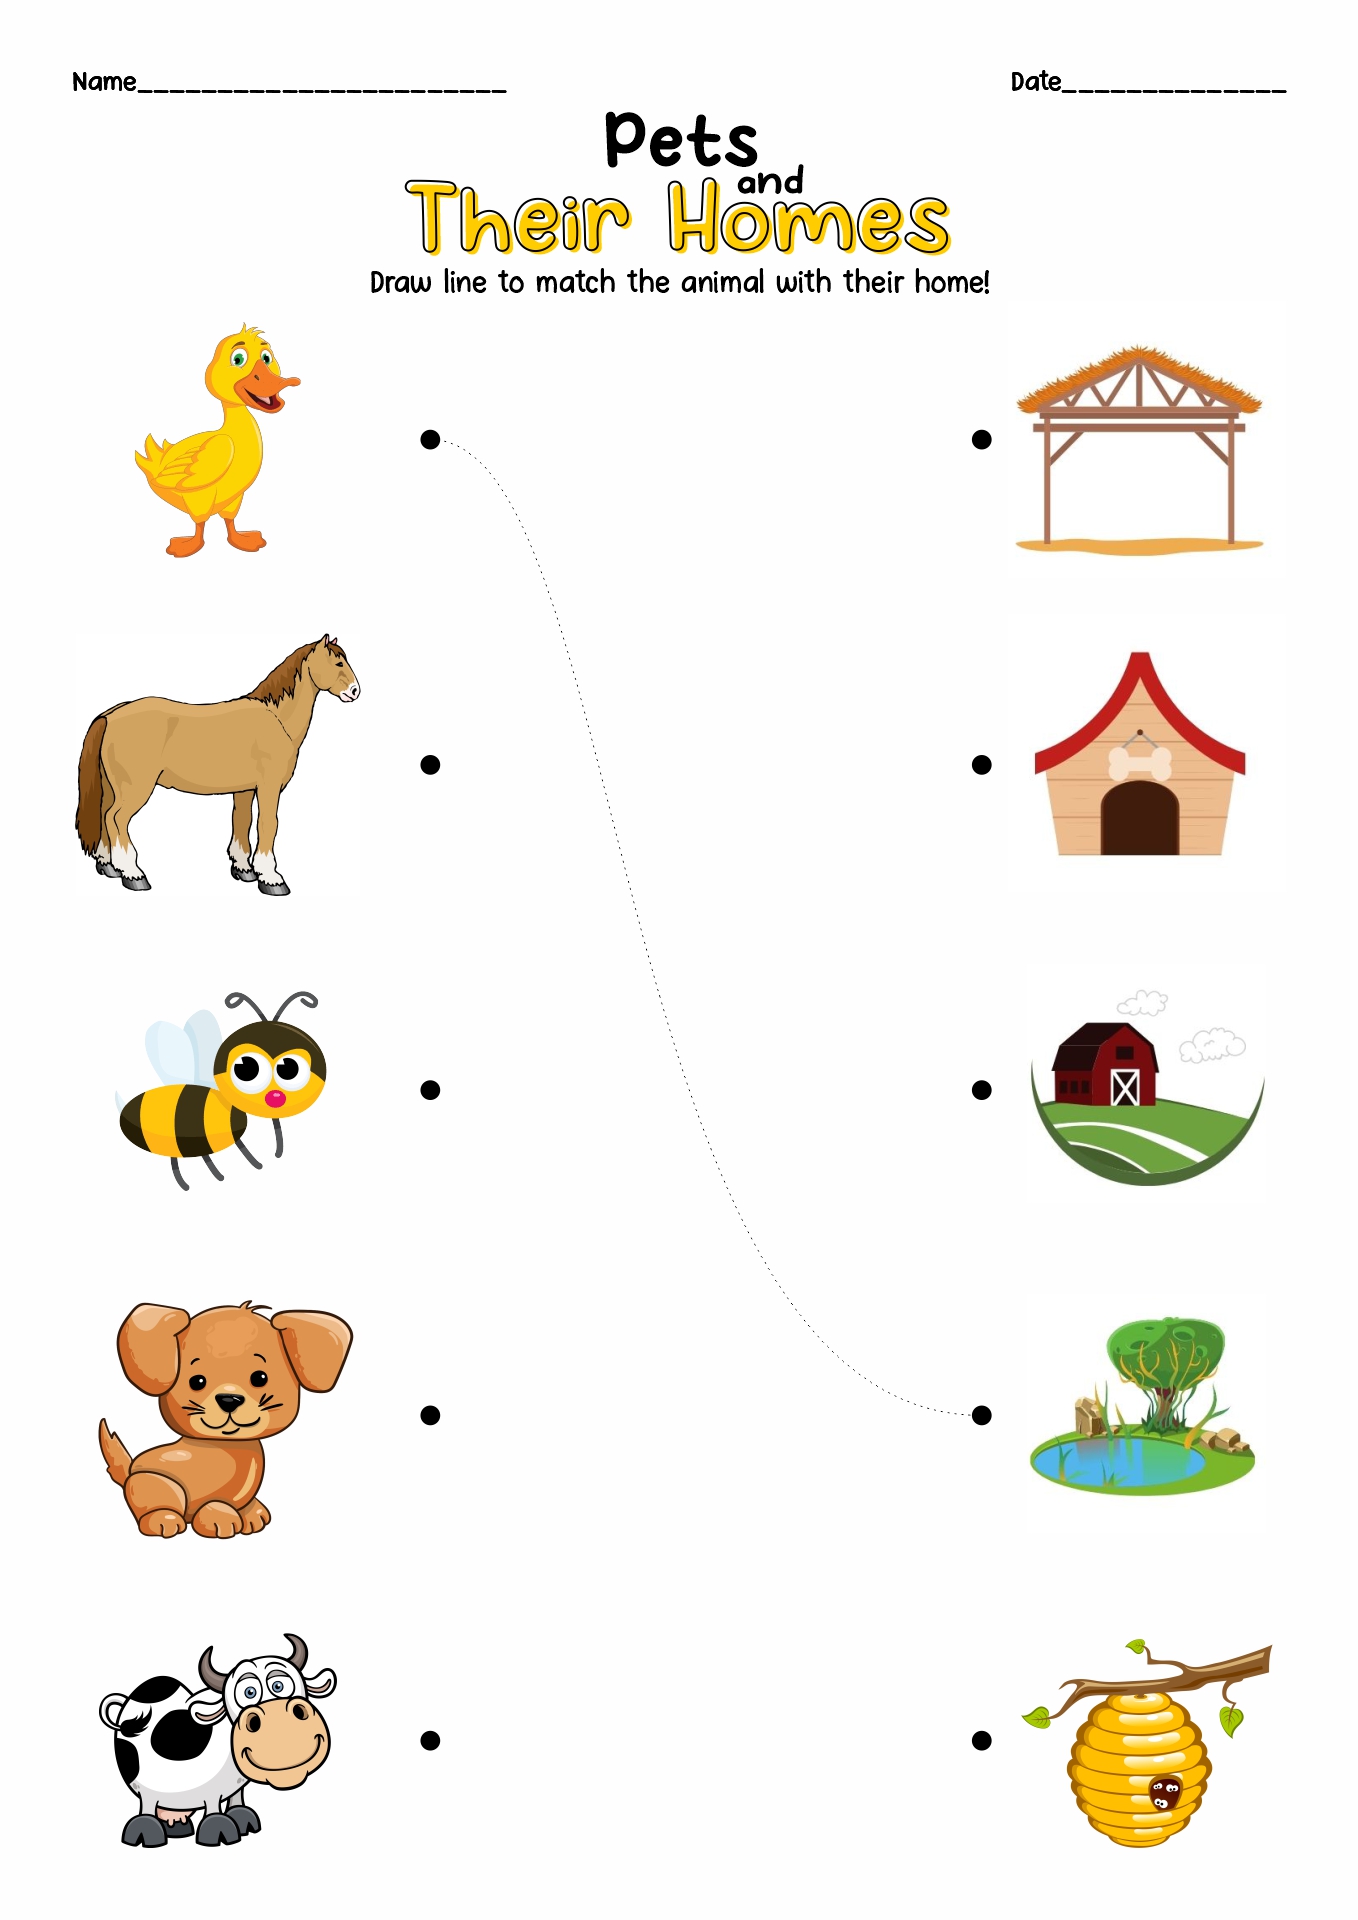 13 Best Images of My Pet Worksheet Printable - Pet Worksheets Preschool